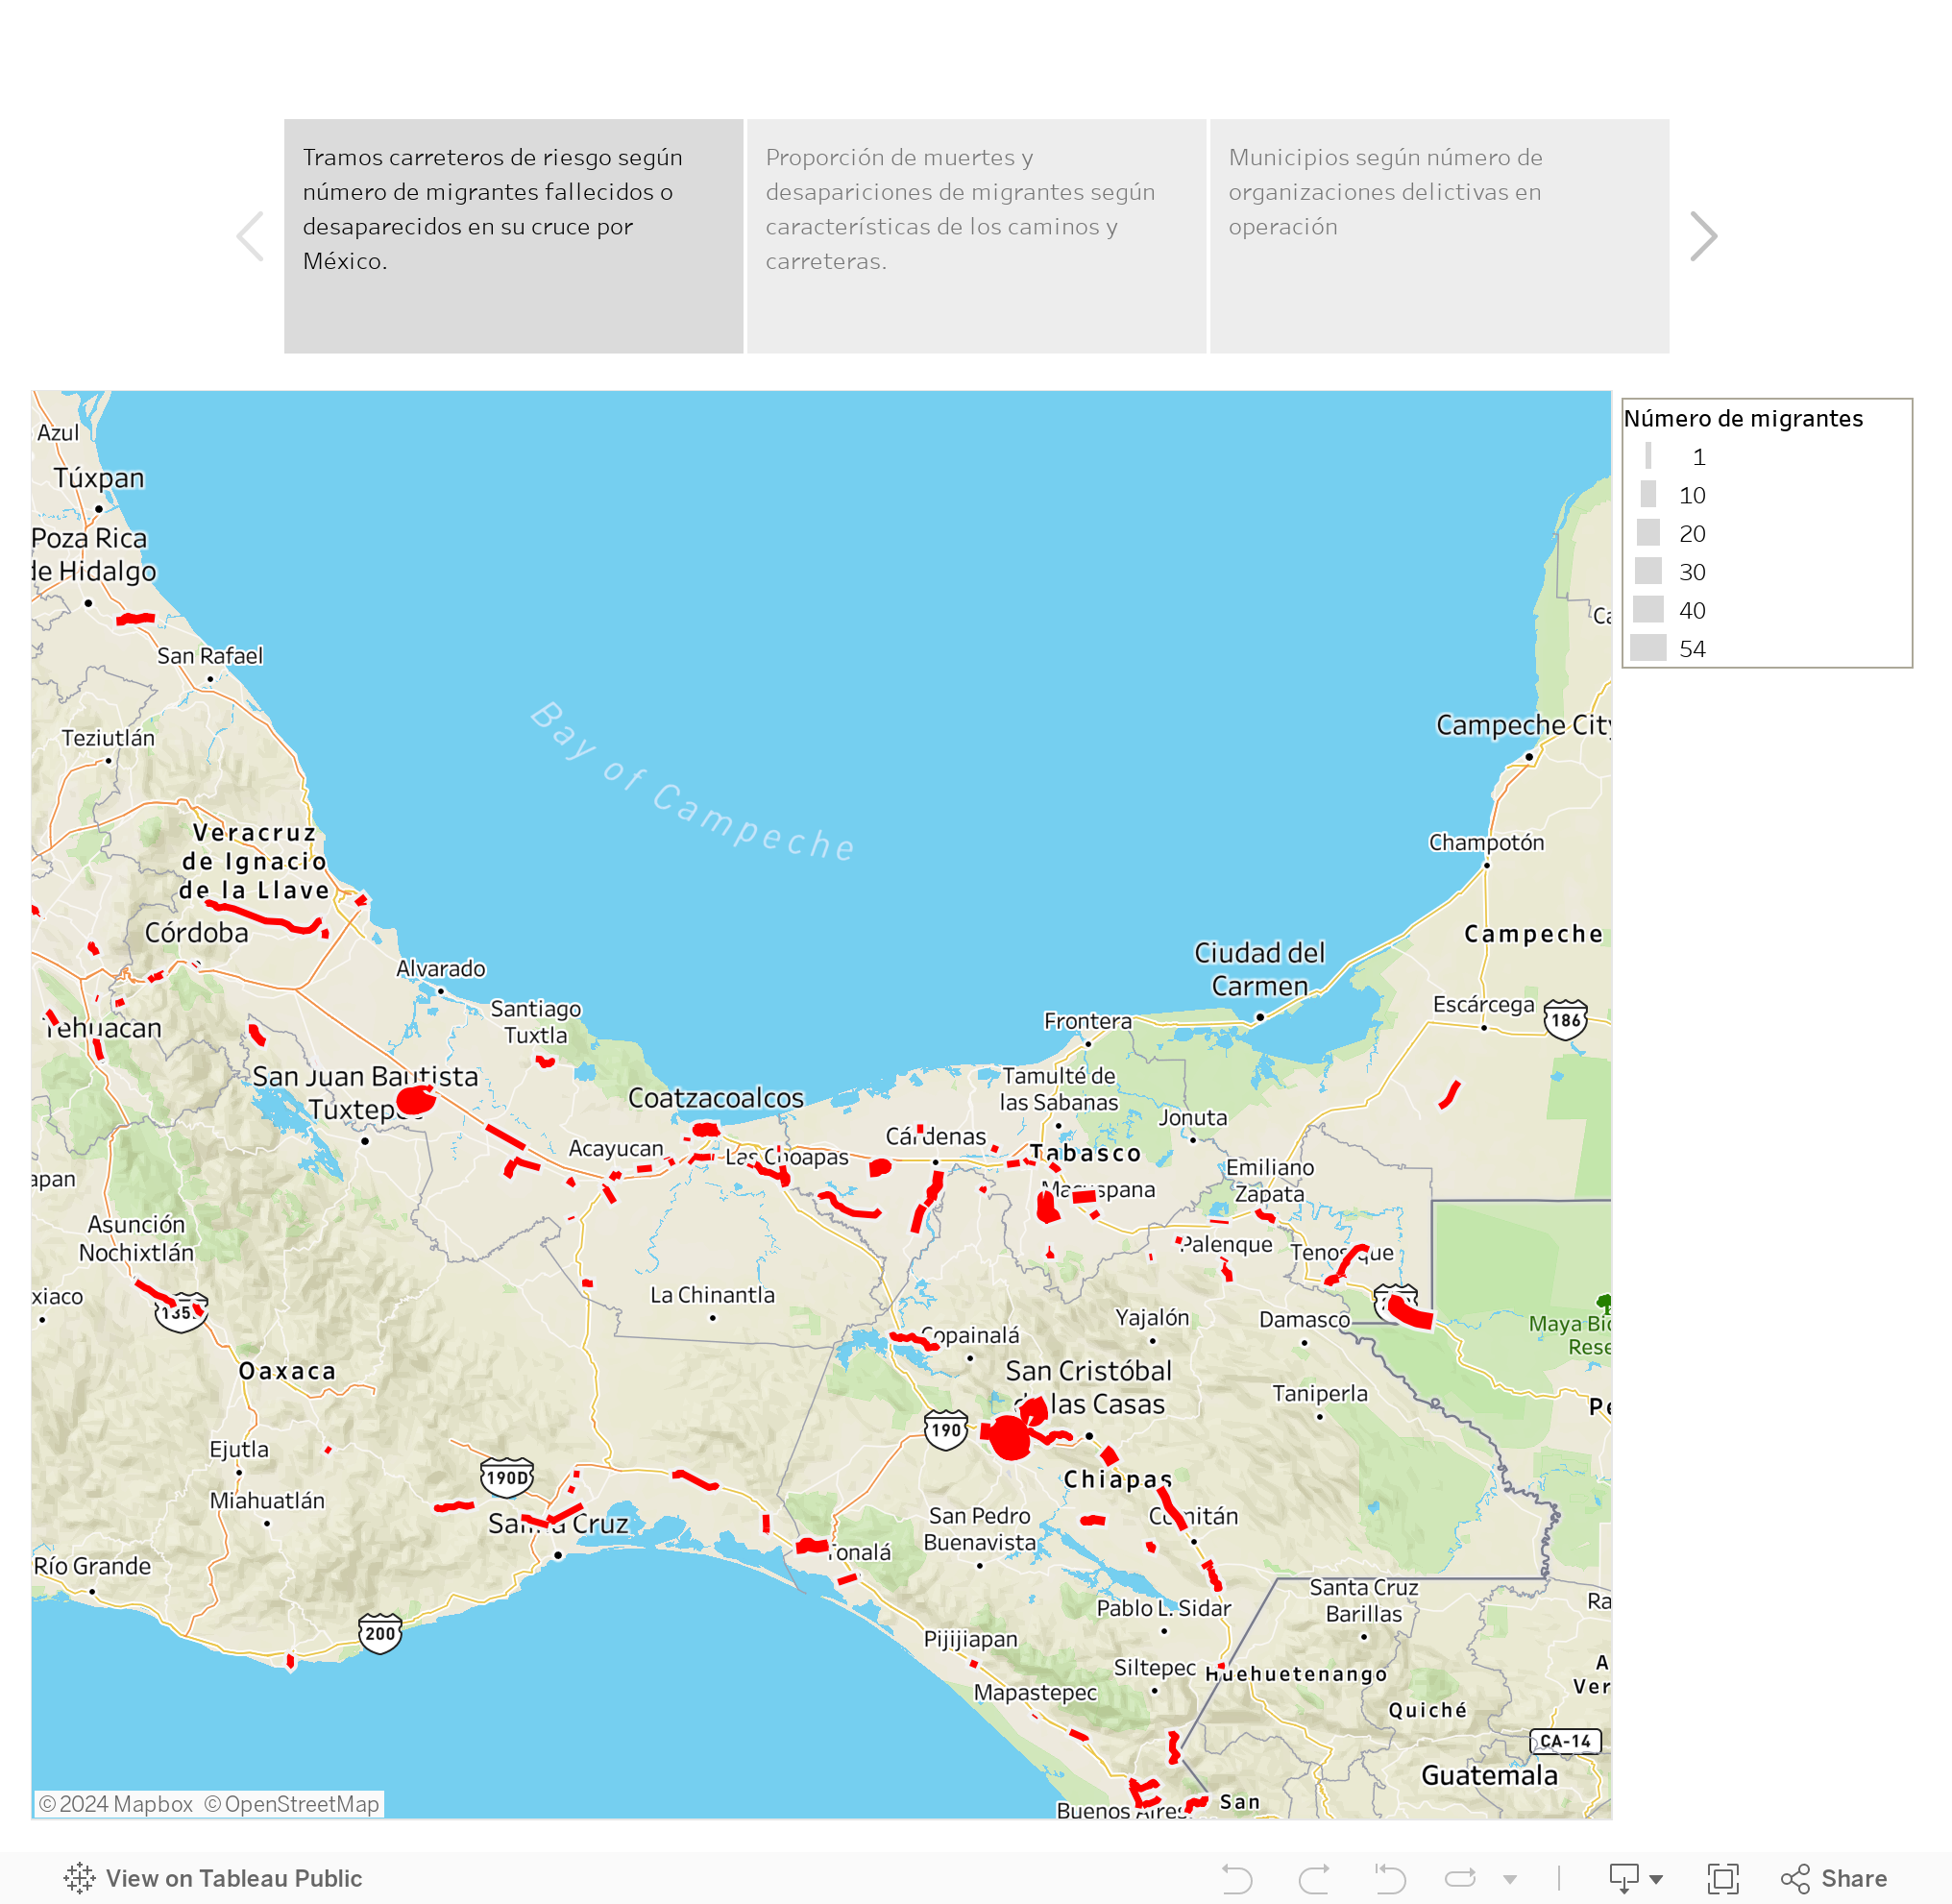 Identificación de puntos de riesgo en los principales caminos y carreteras de México para los migrantes y municipios con presencia de organizaciones delictivas.  